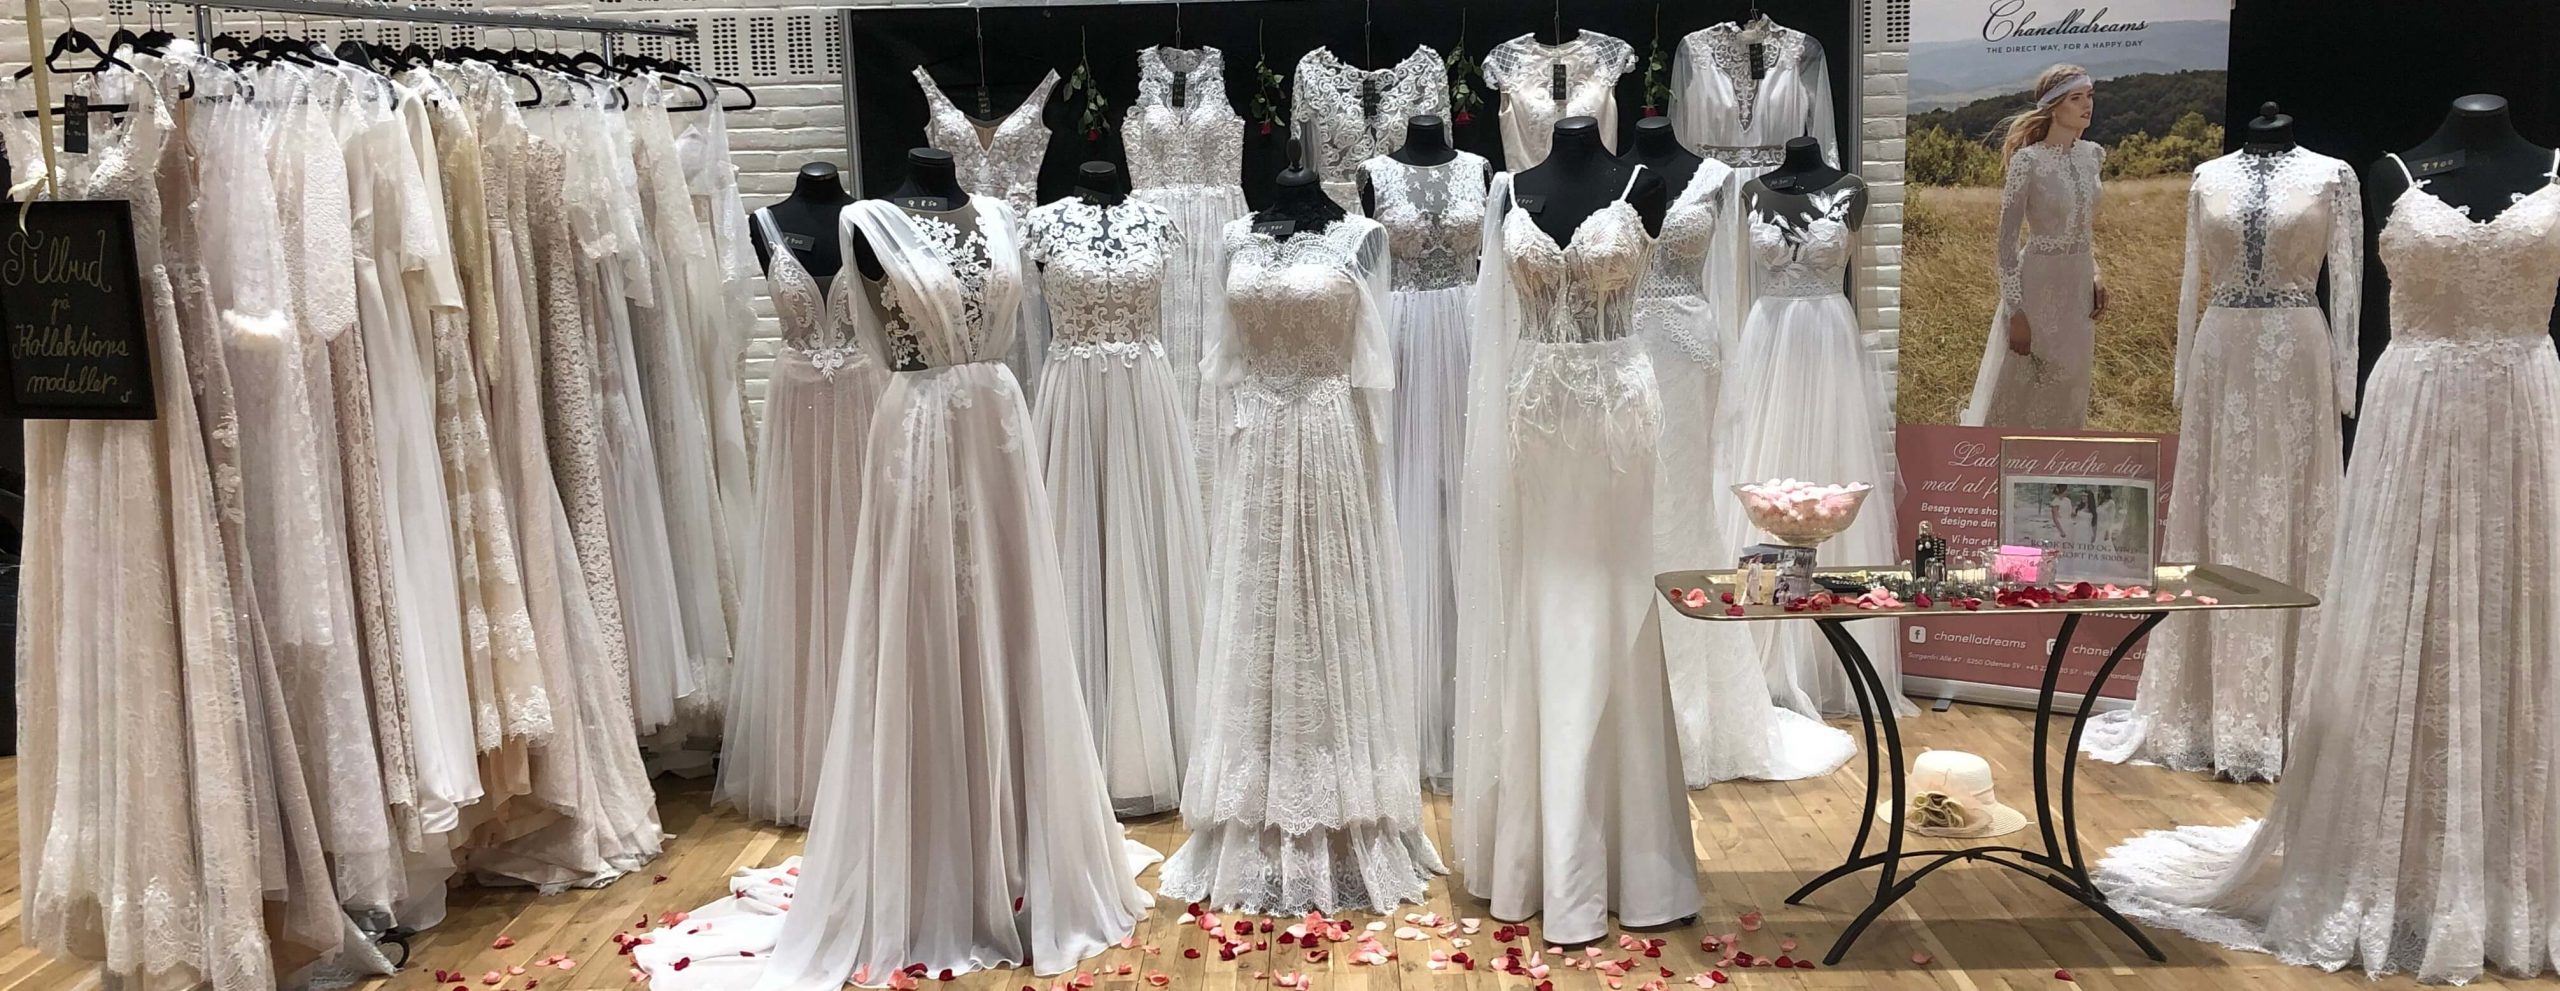 Chanelladreams specialdesignede vintage brudekjoler